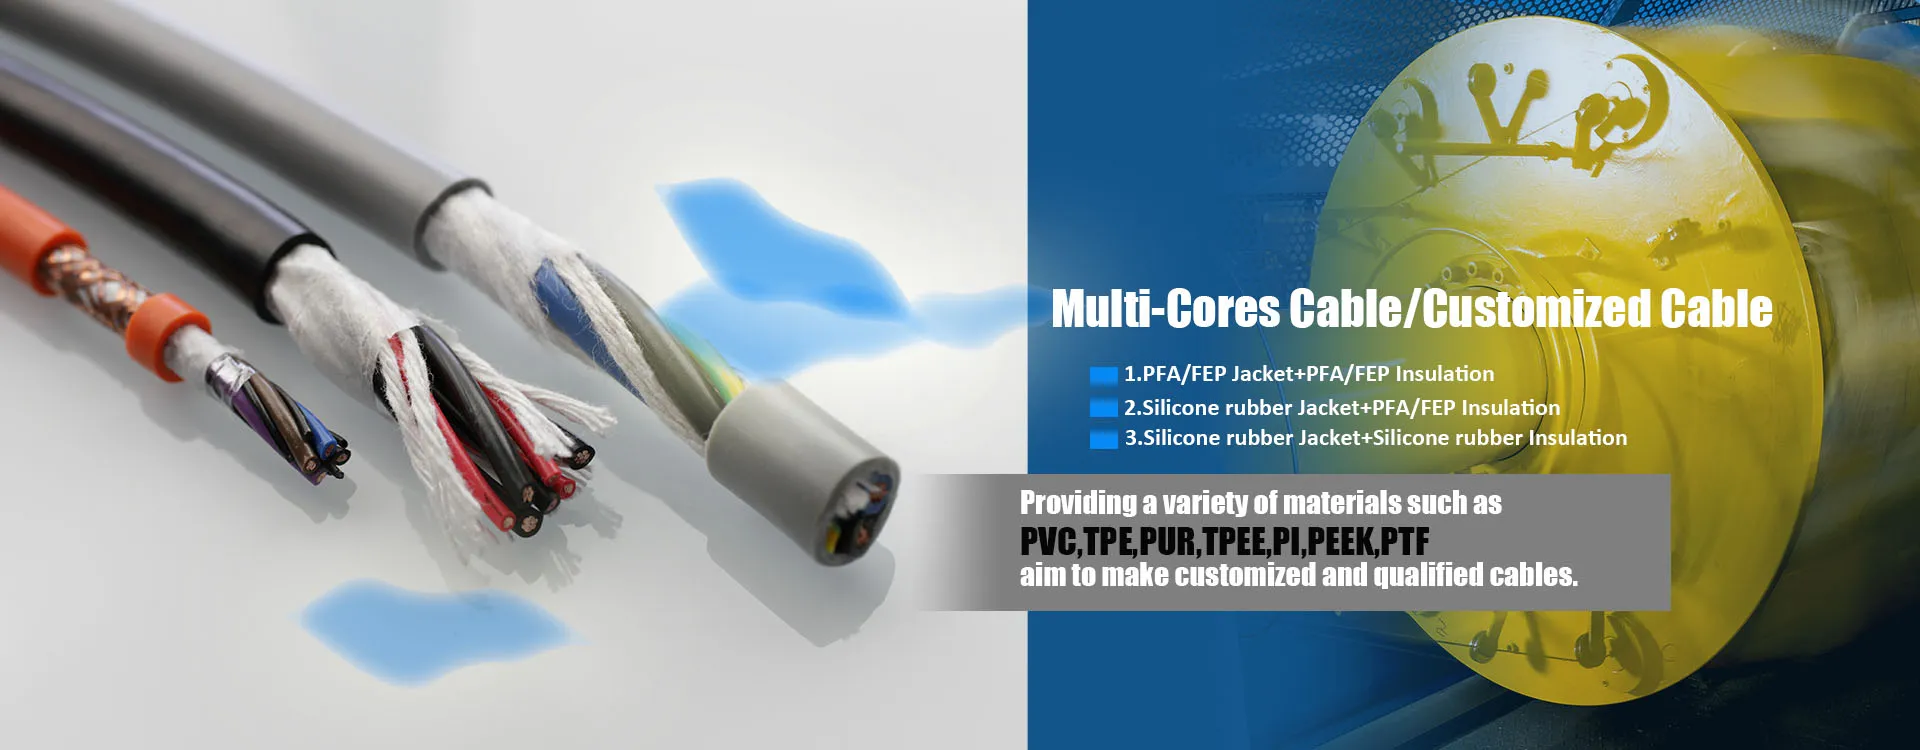 Multi-core cables